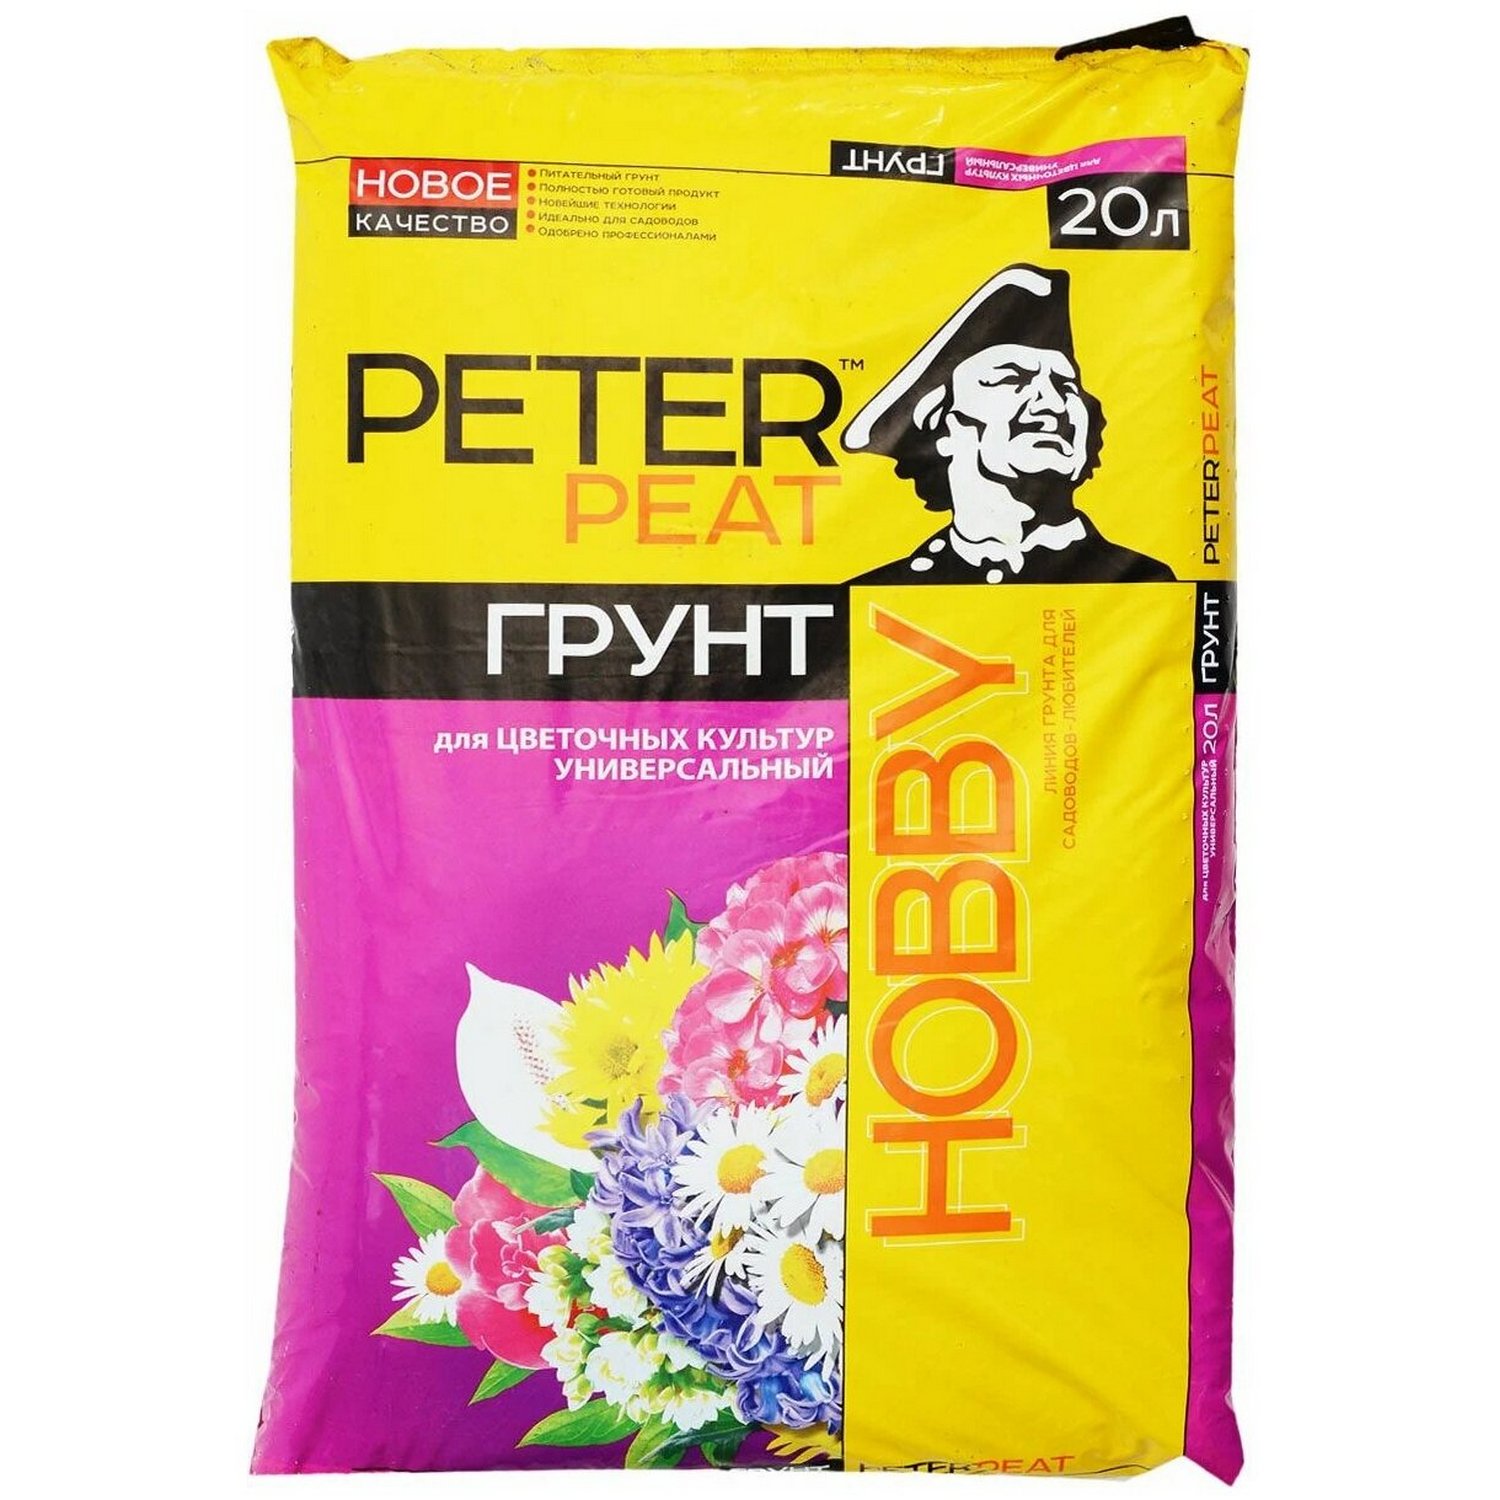 Грунт PETER PEAT для цветочных культур Универсальный линия Хобби 20л - фото 1